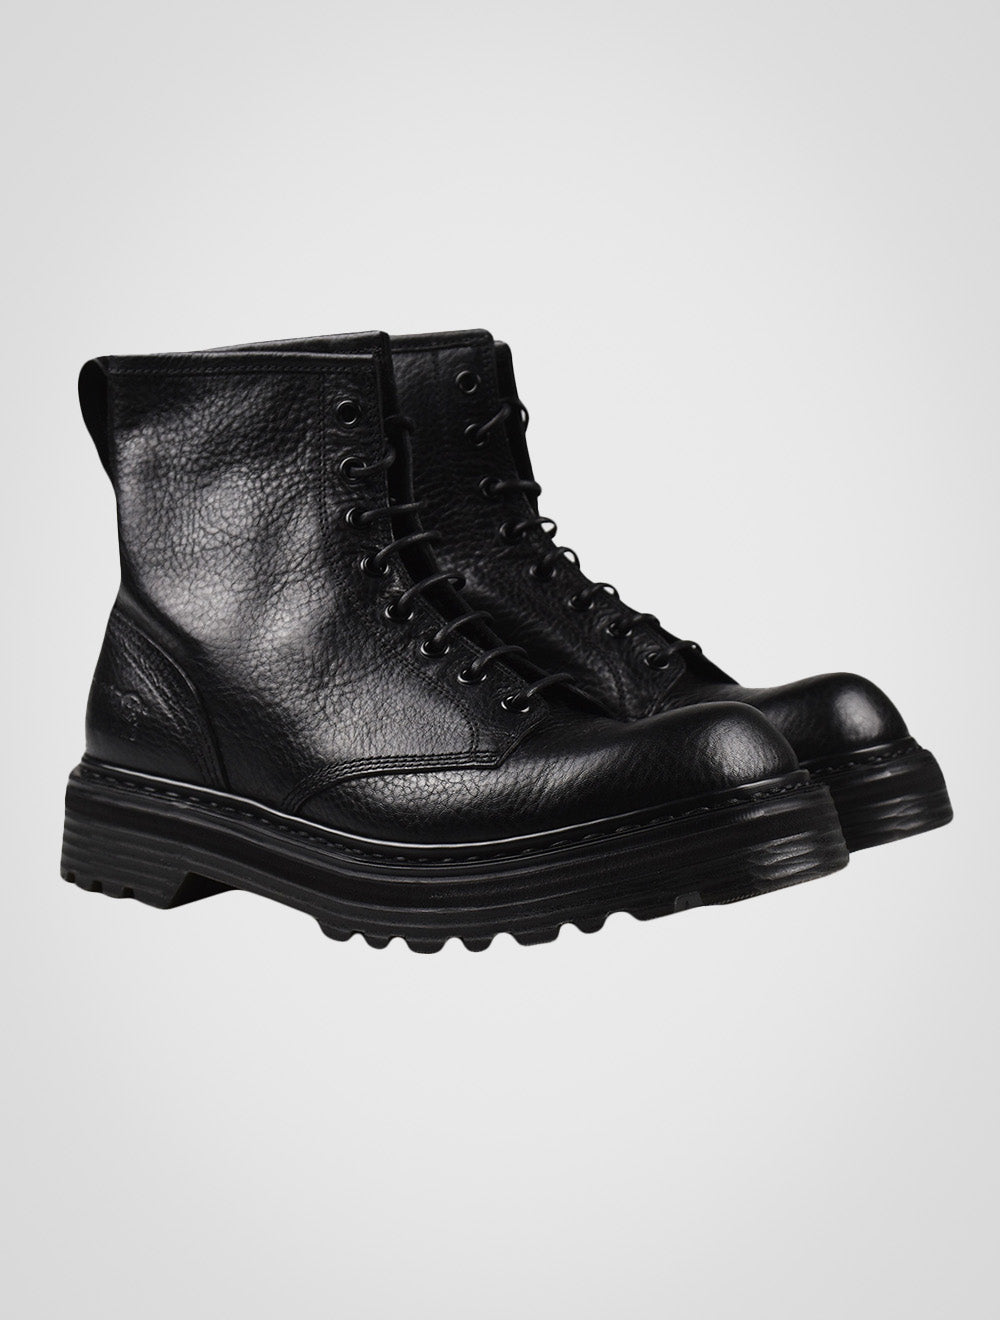 Premiata Black Leather Boots VOLANATO31543PS7